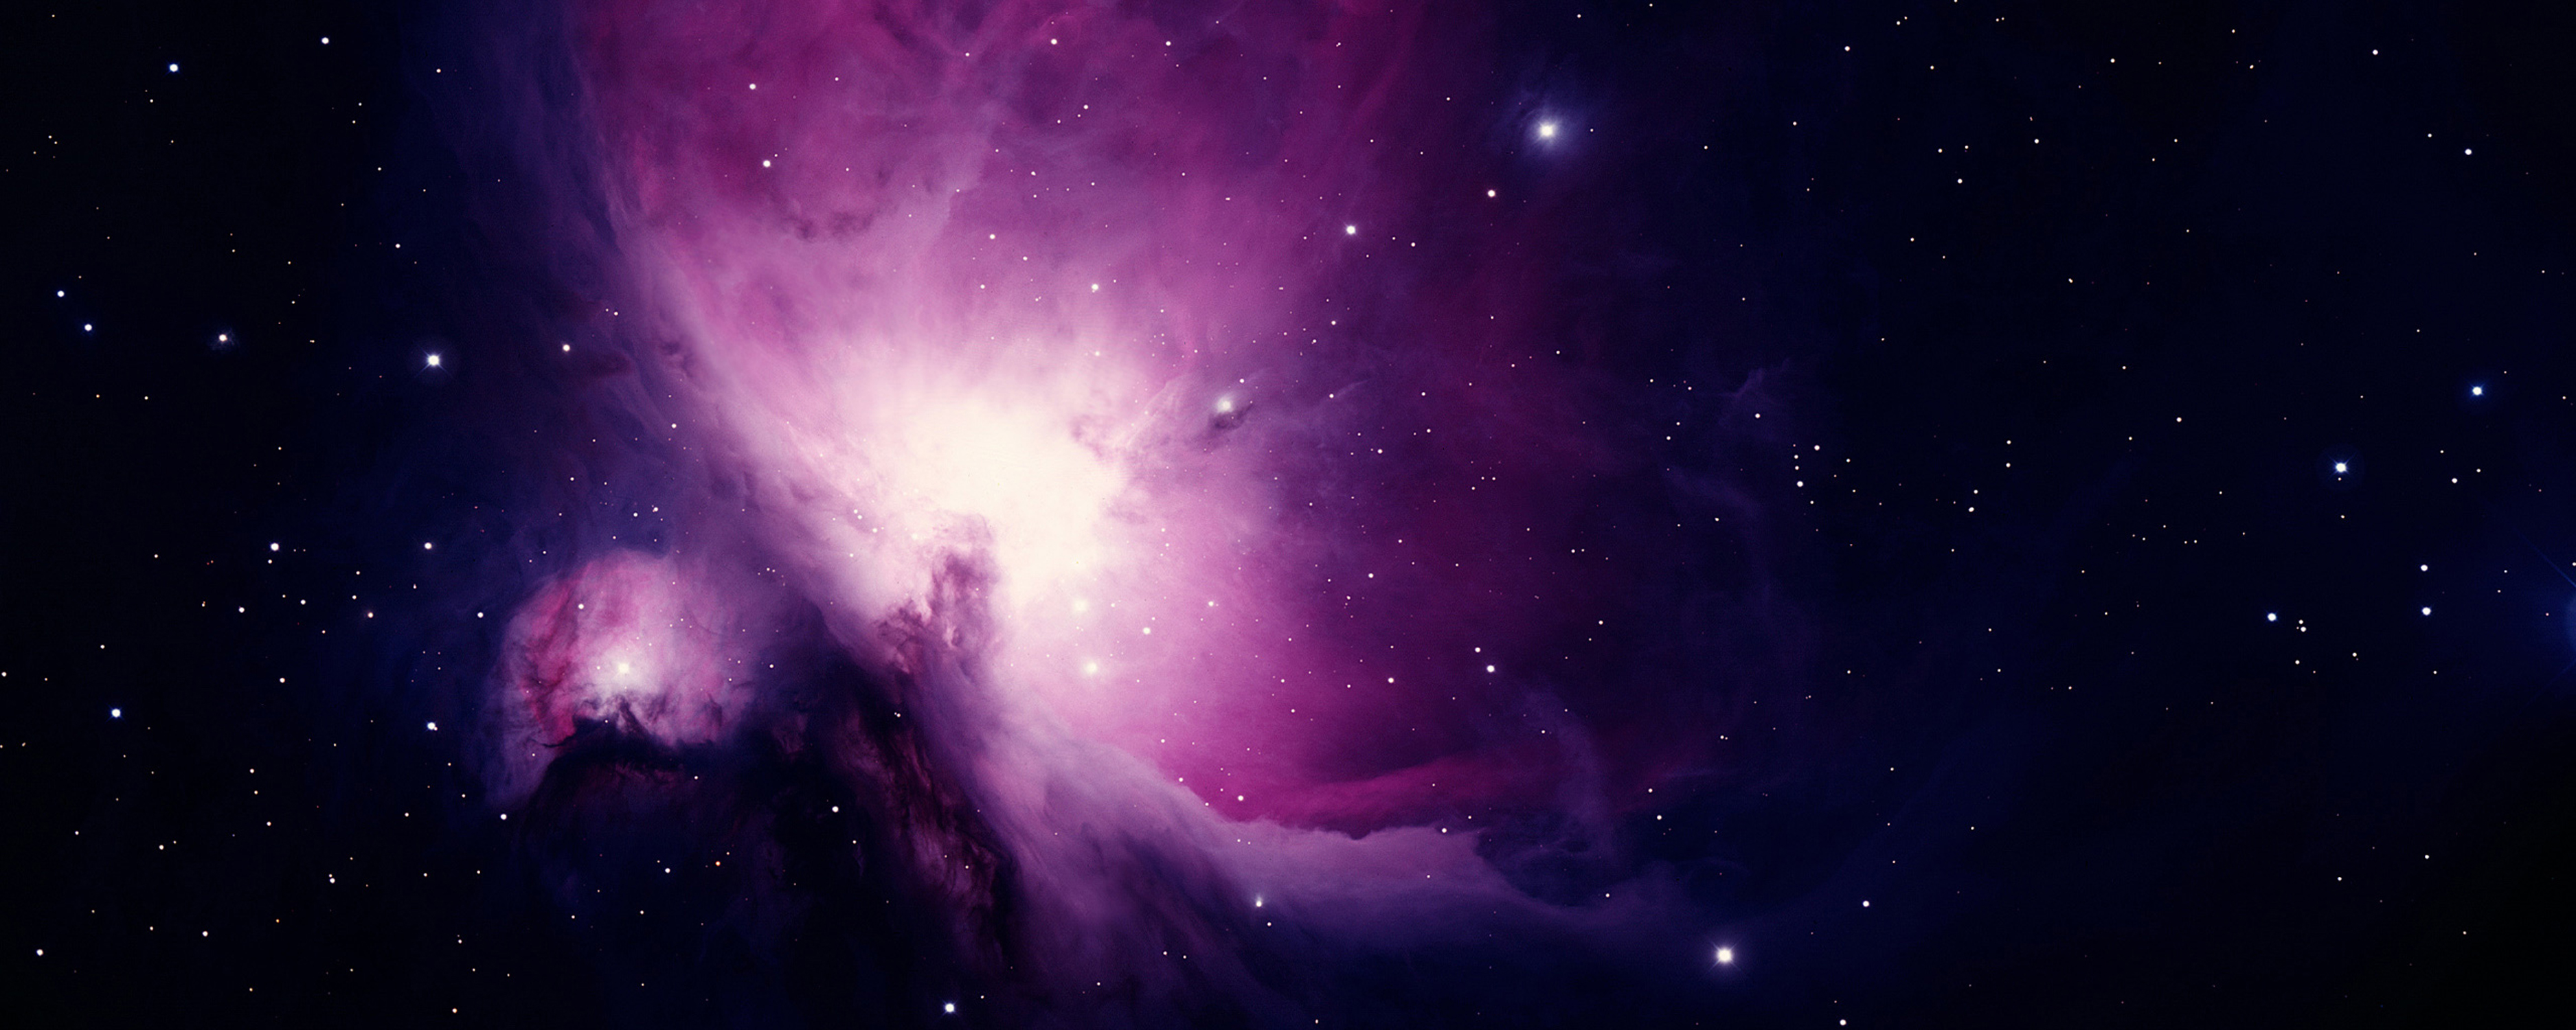 космическое пространство, туманности, Orion - обои на рабочий стол